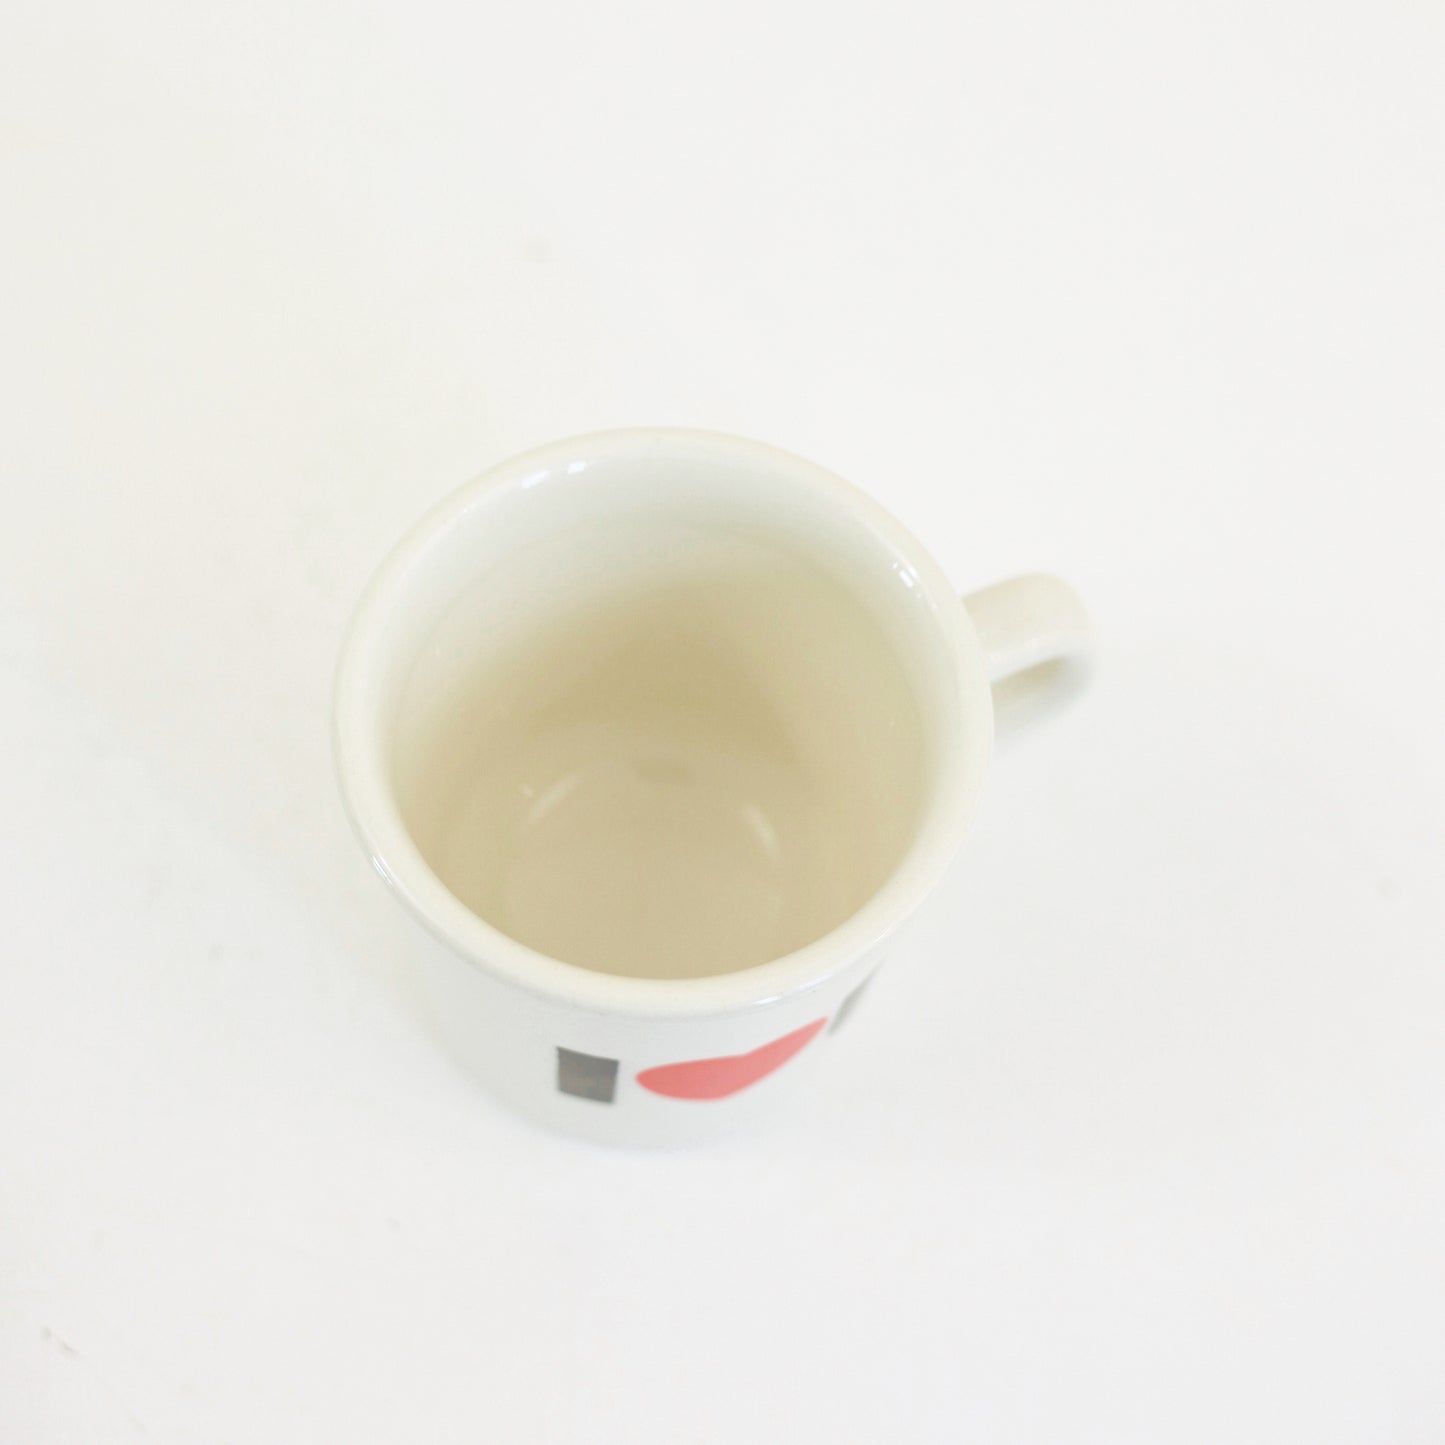 SOLD - Vintage Love Mug